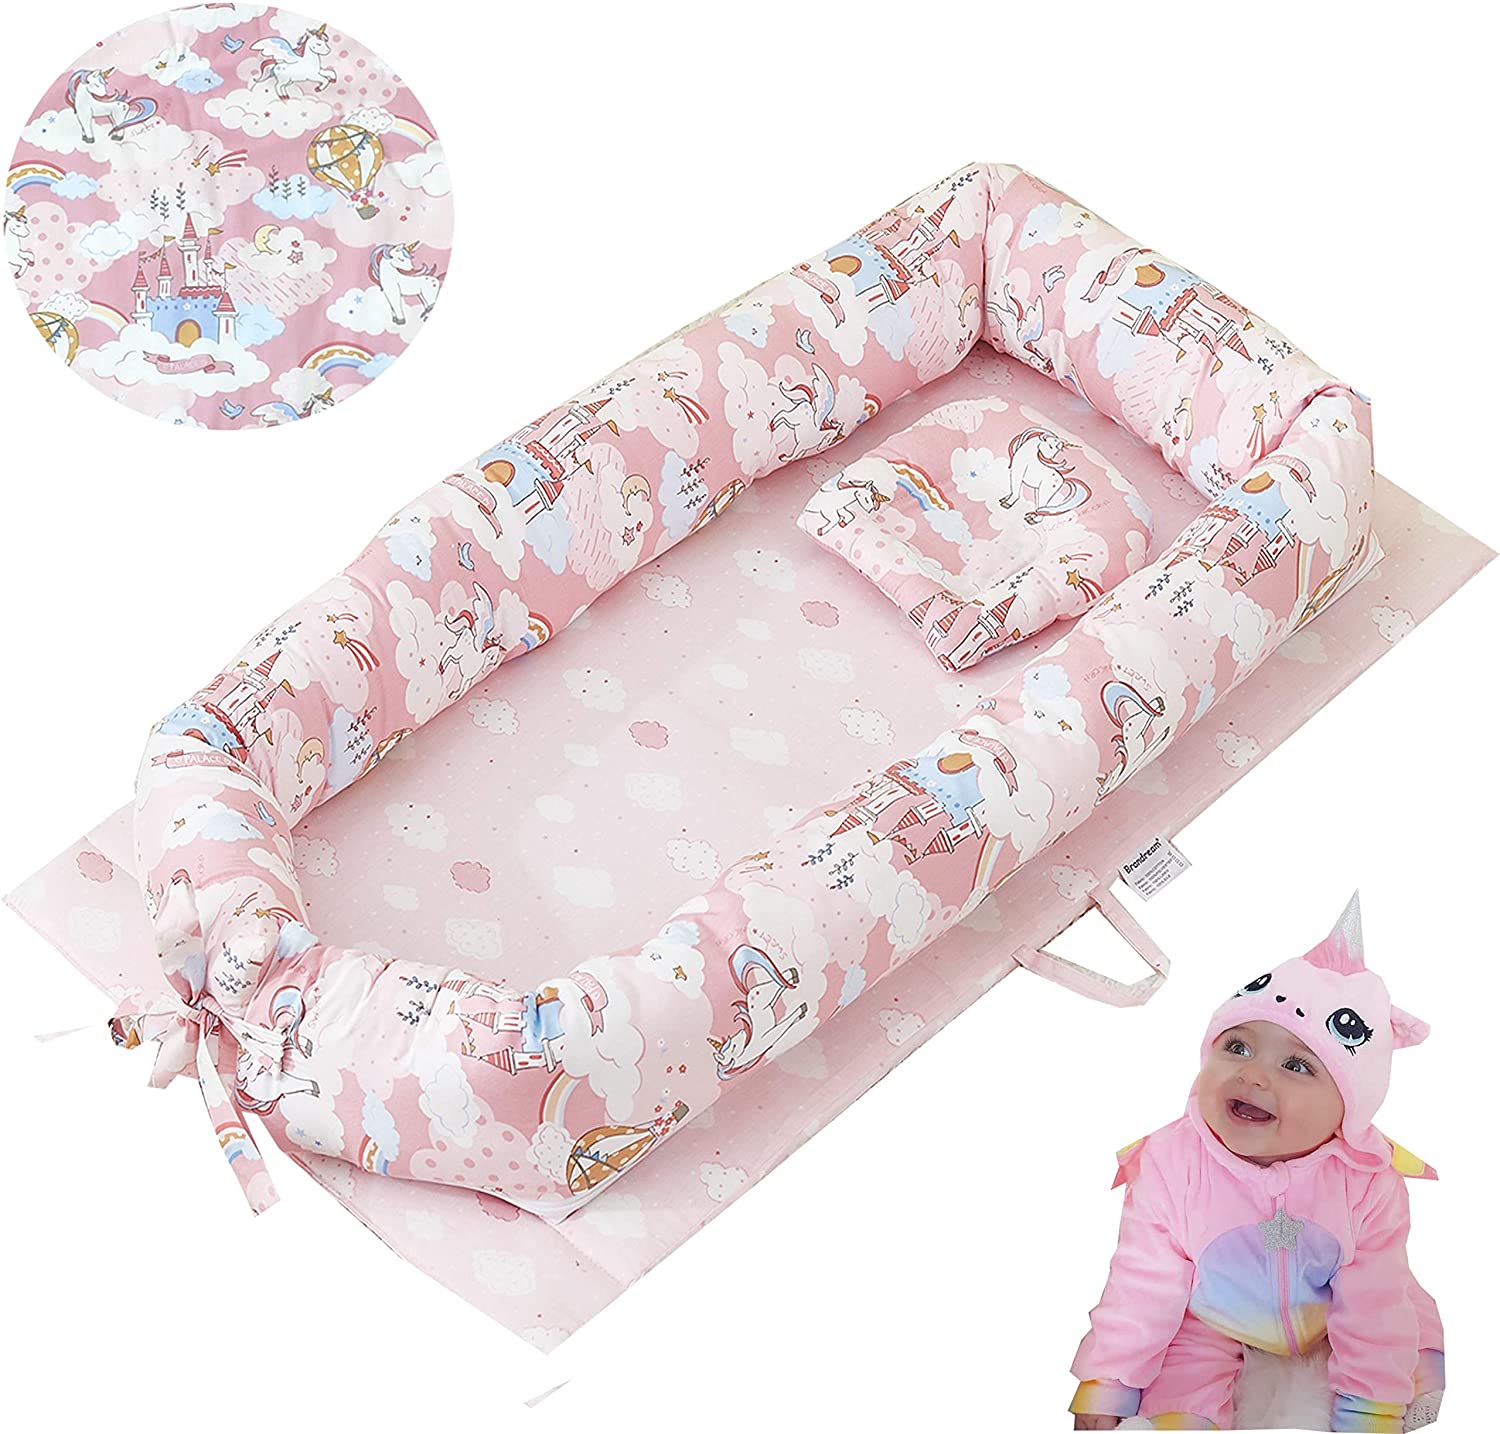 Brandream Baby Nest Bed, Baby Bassinet for Bed, Newborn Infant Co